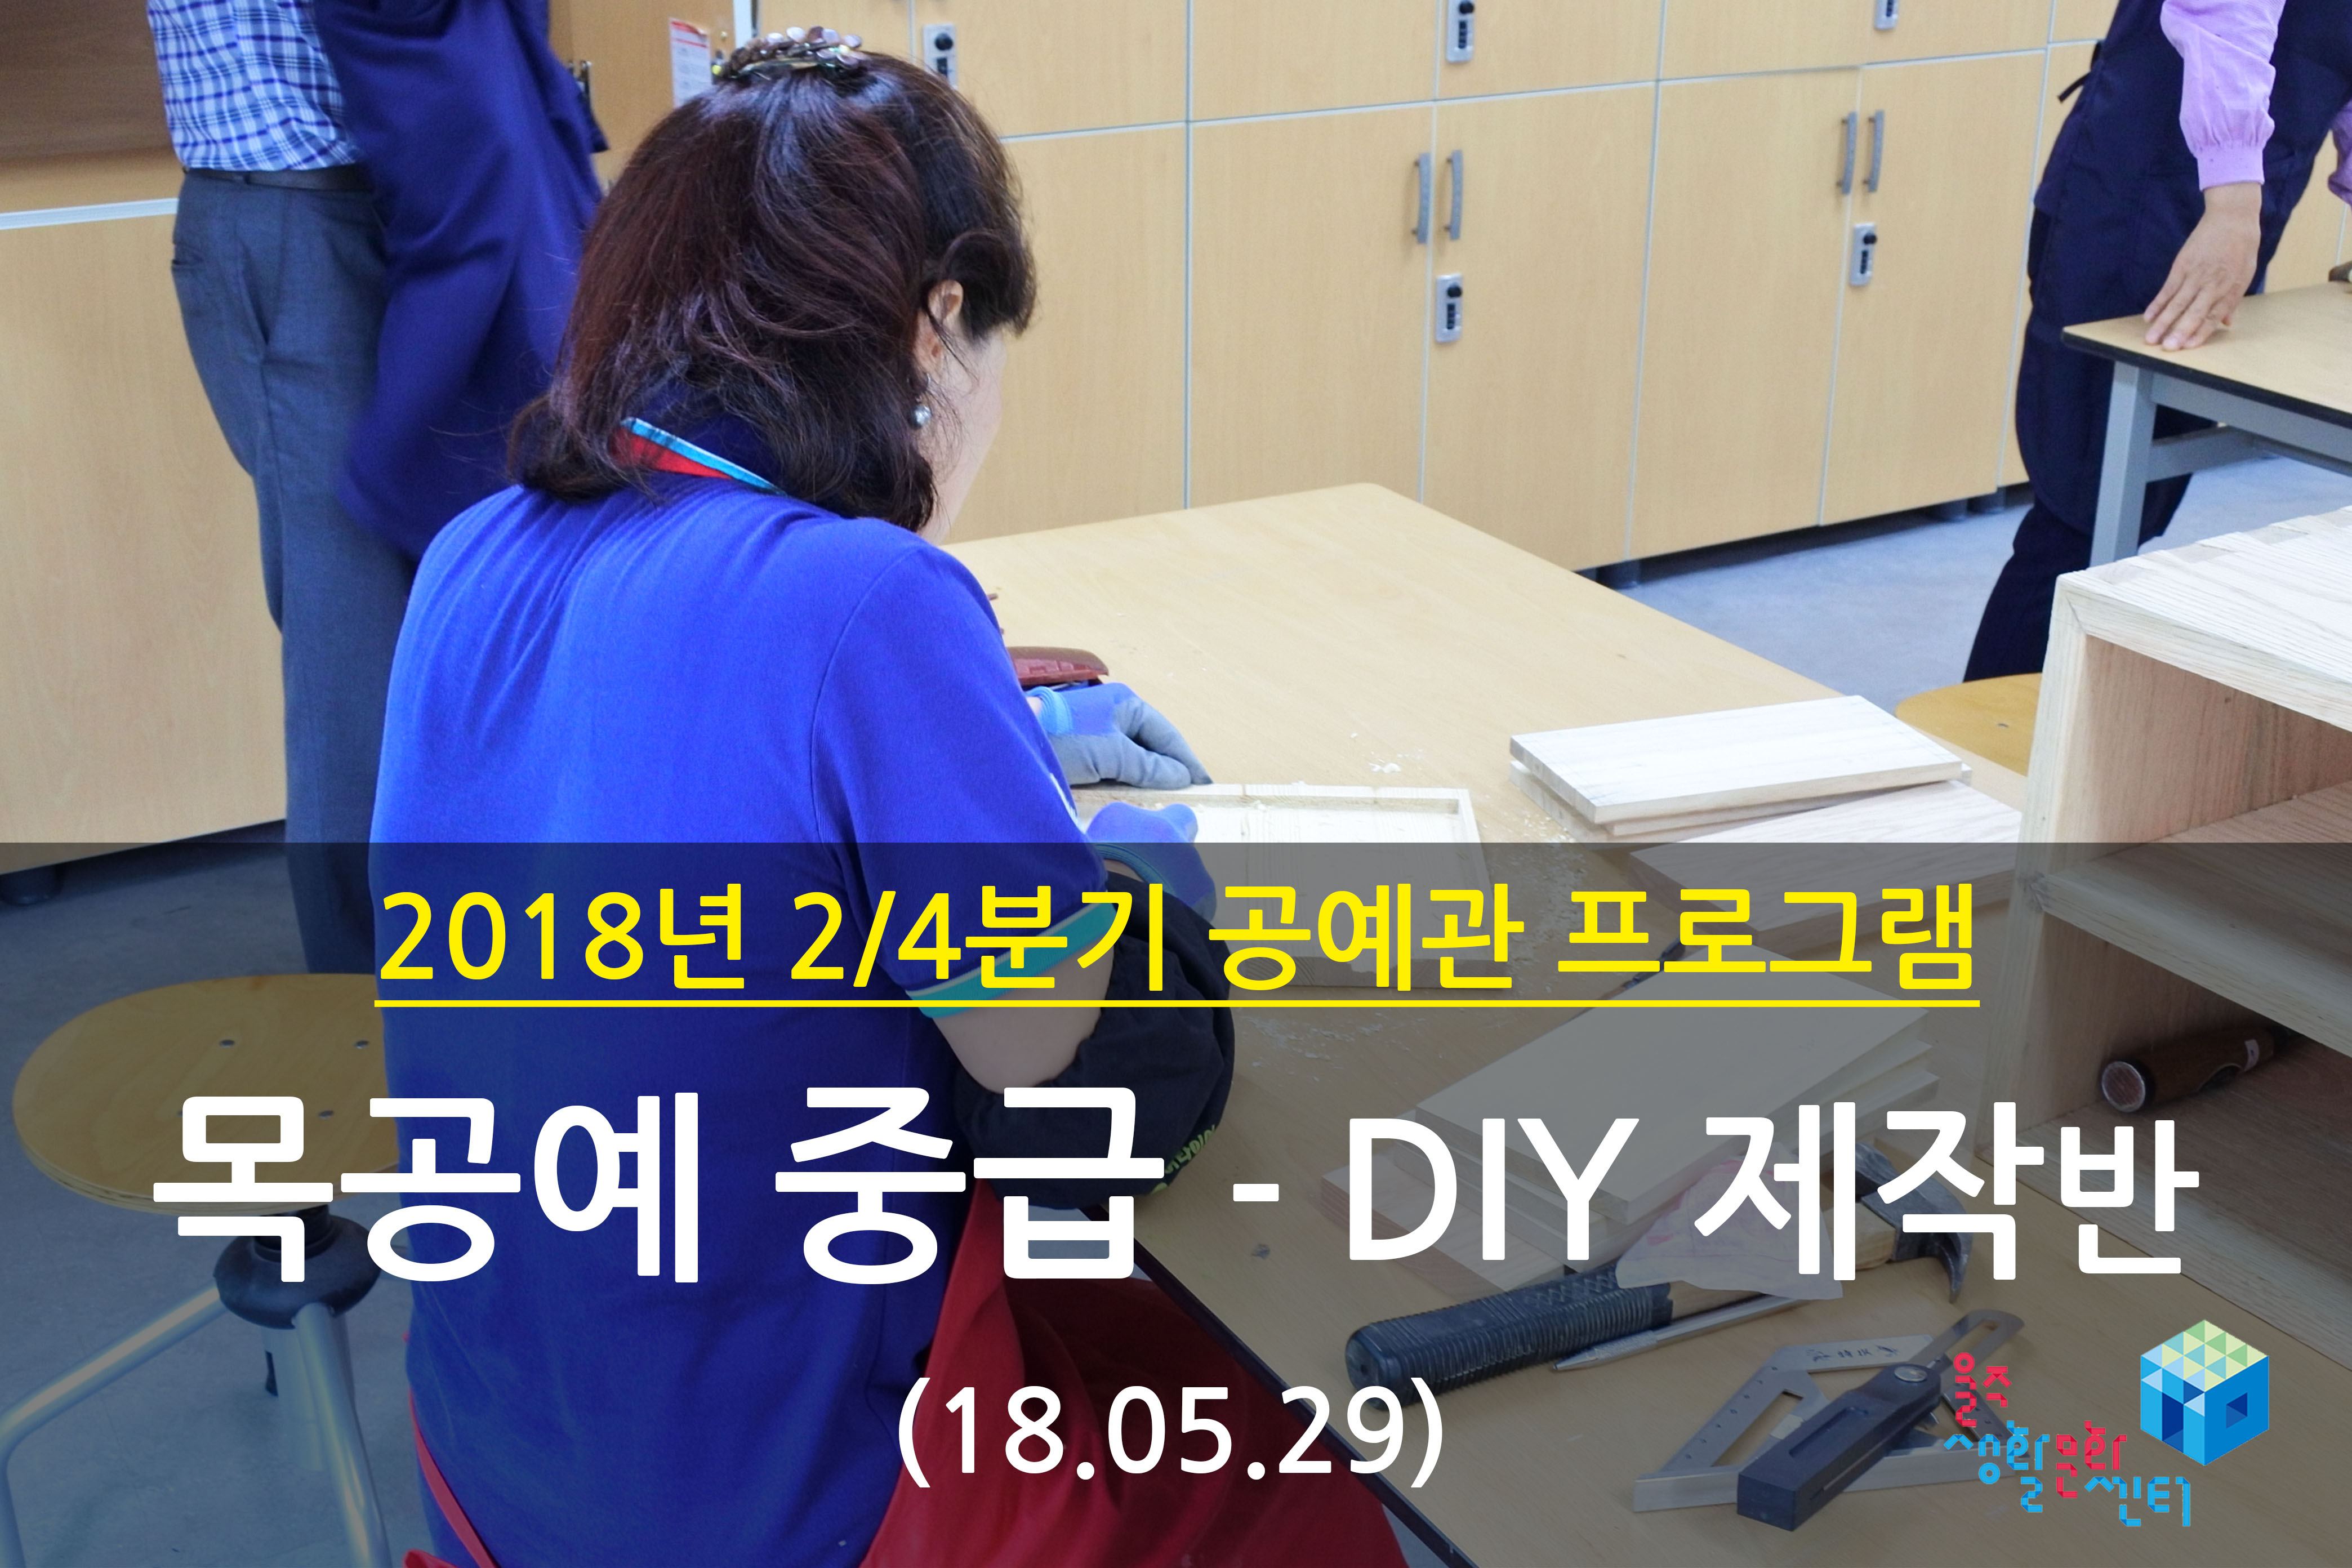 2018.05.29 _ 목공예 중급 - DIY 제작반 _ 2/4분기 8주차 수업